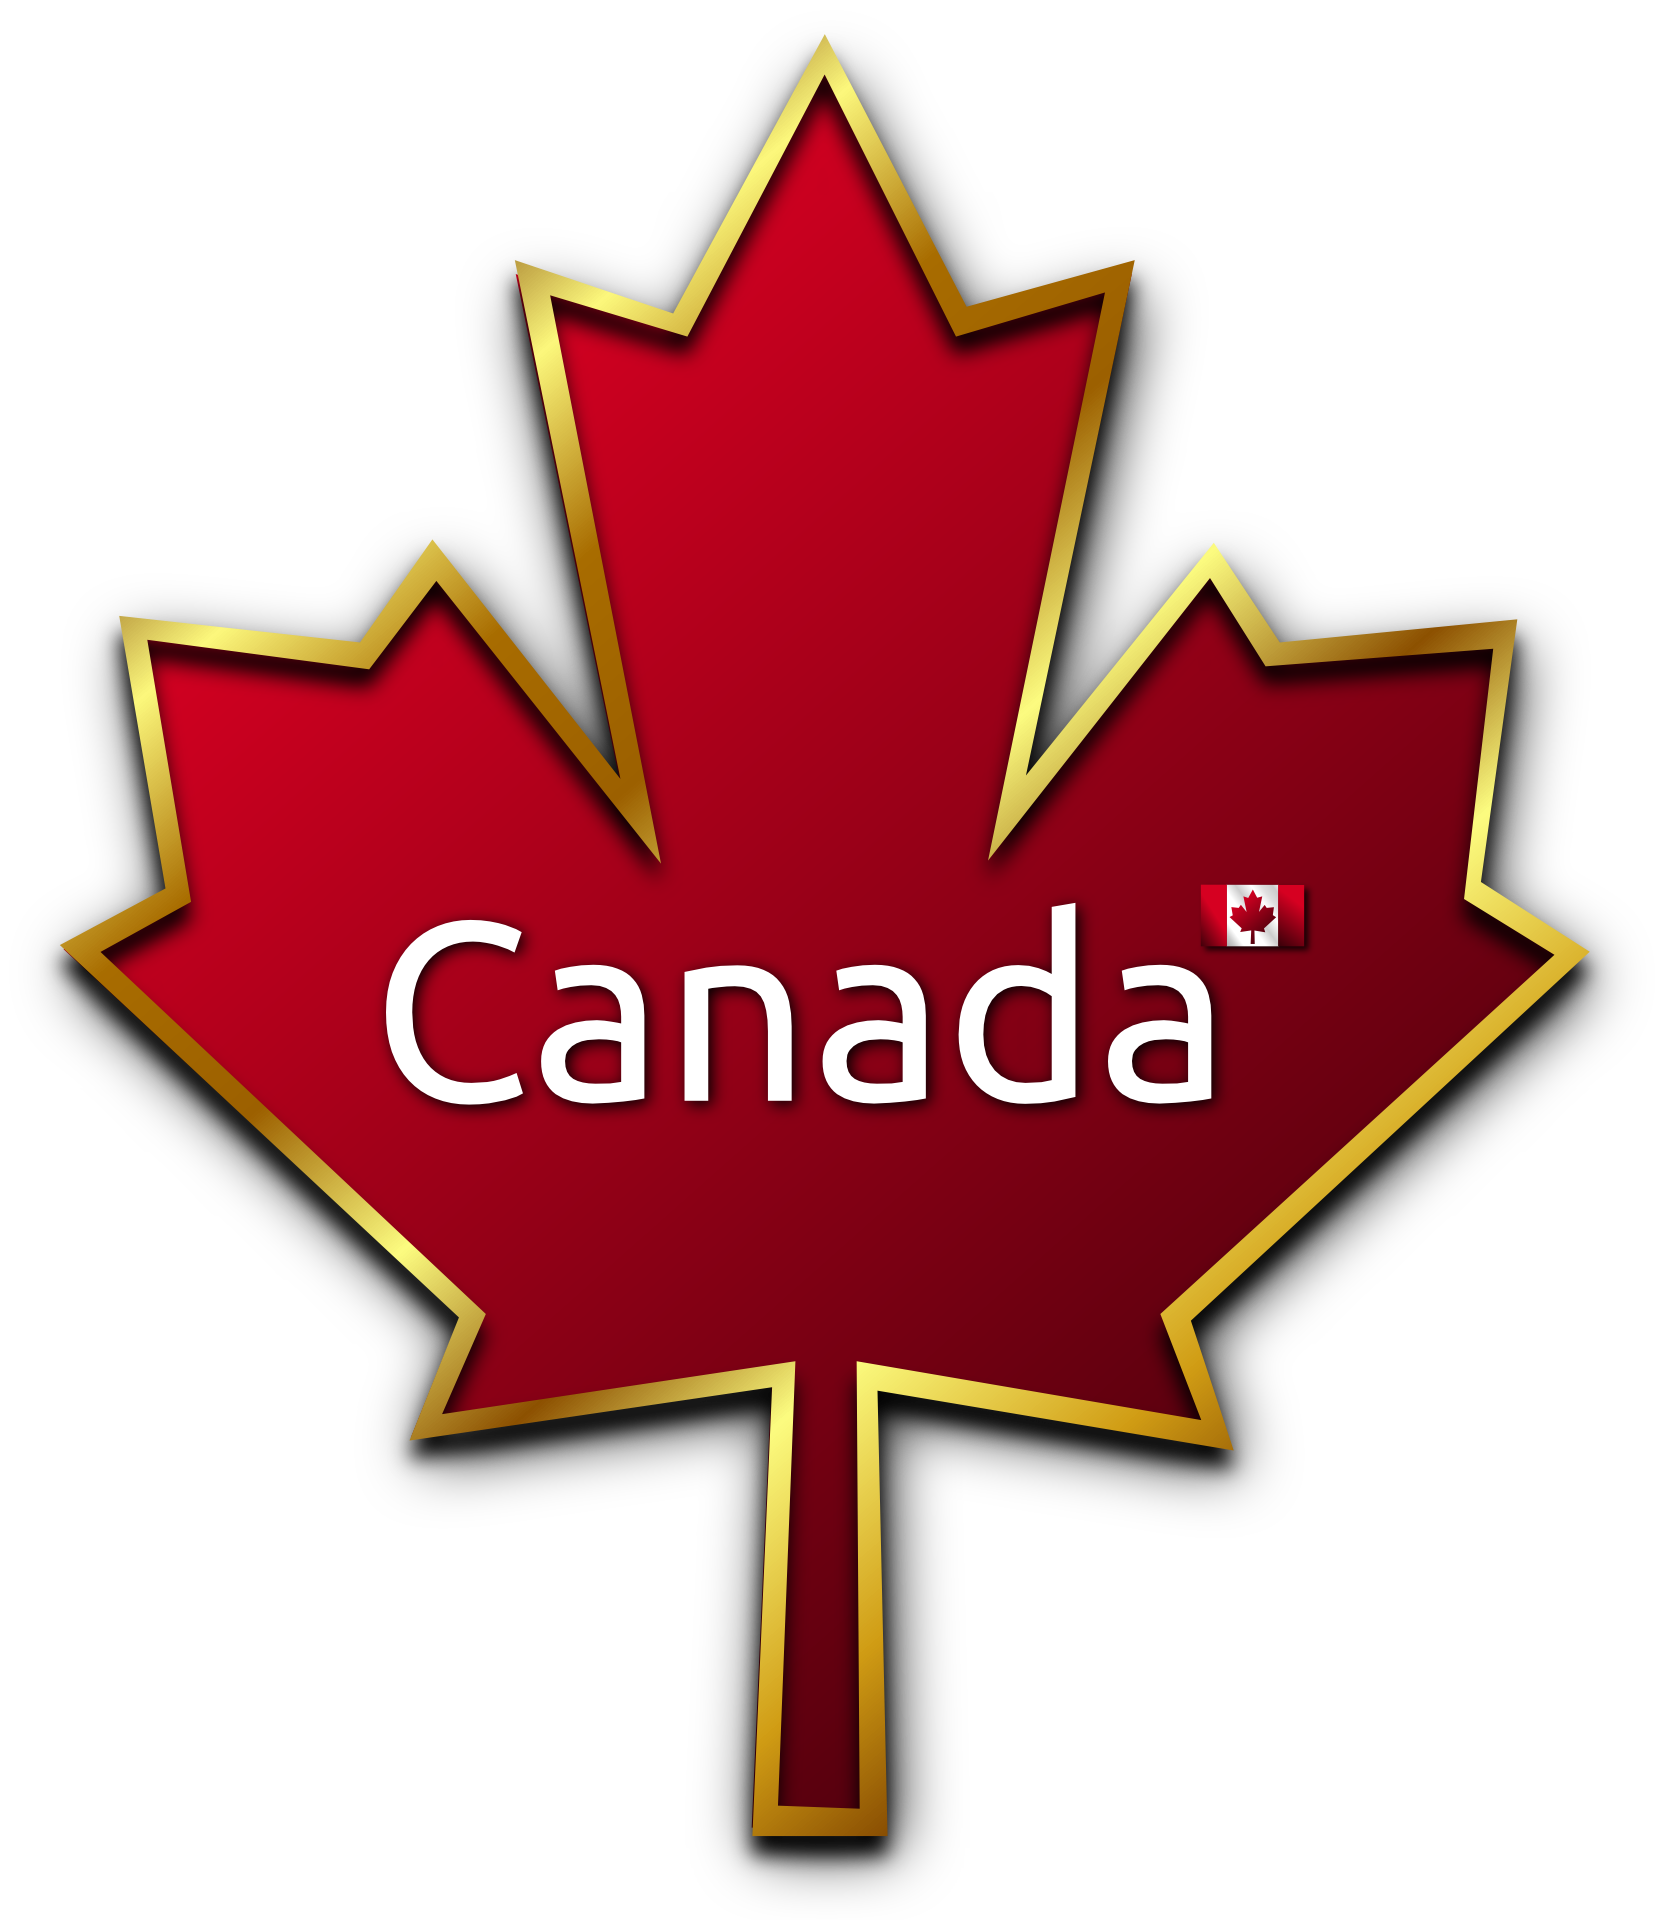 Vậy tại sao các đương đơn lại bị rớt Visa Canada? - Dịch vụ Xin Visa canada uy tín và chuyên nghiệp!